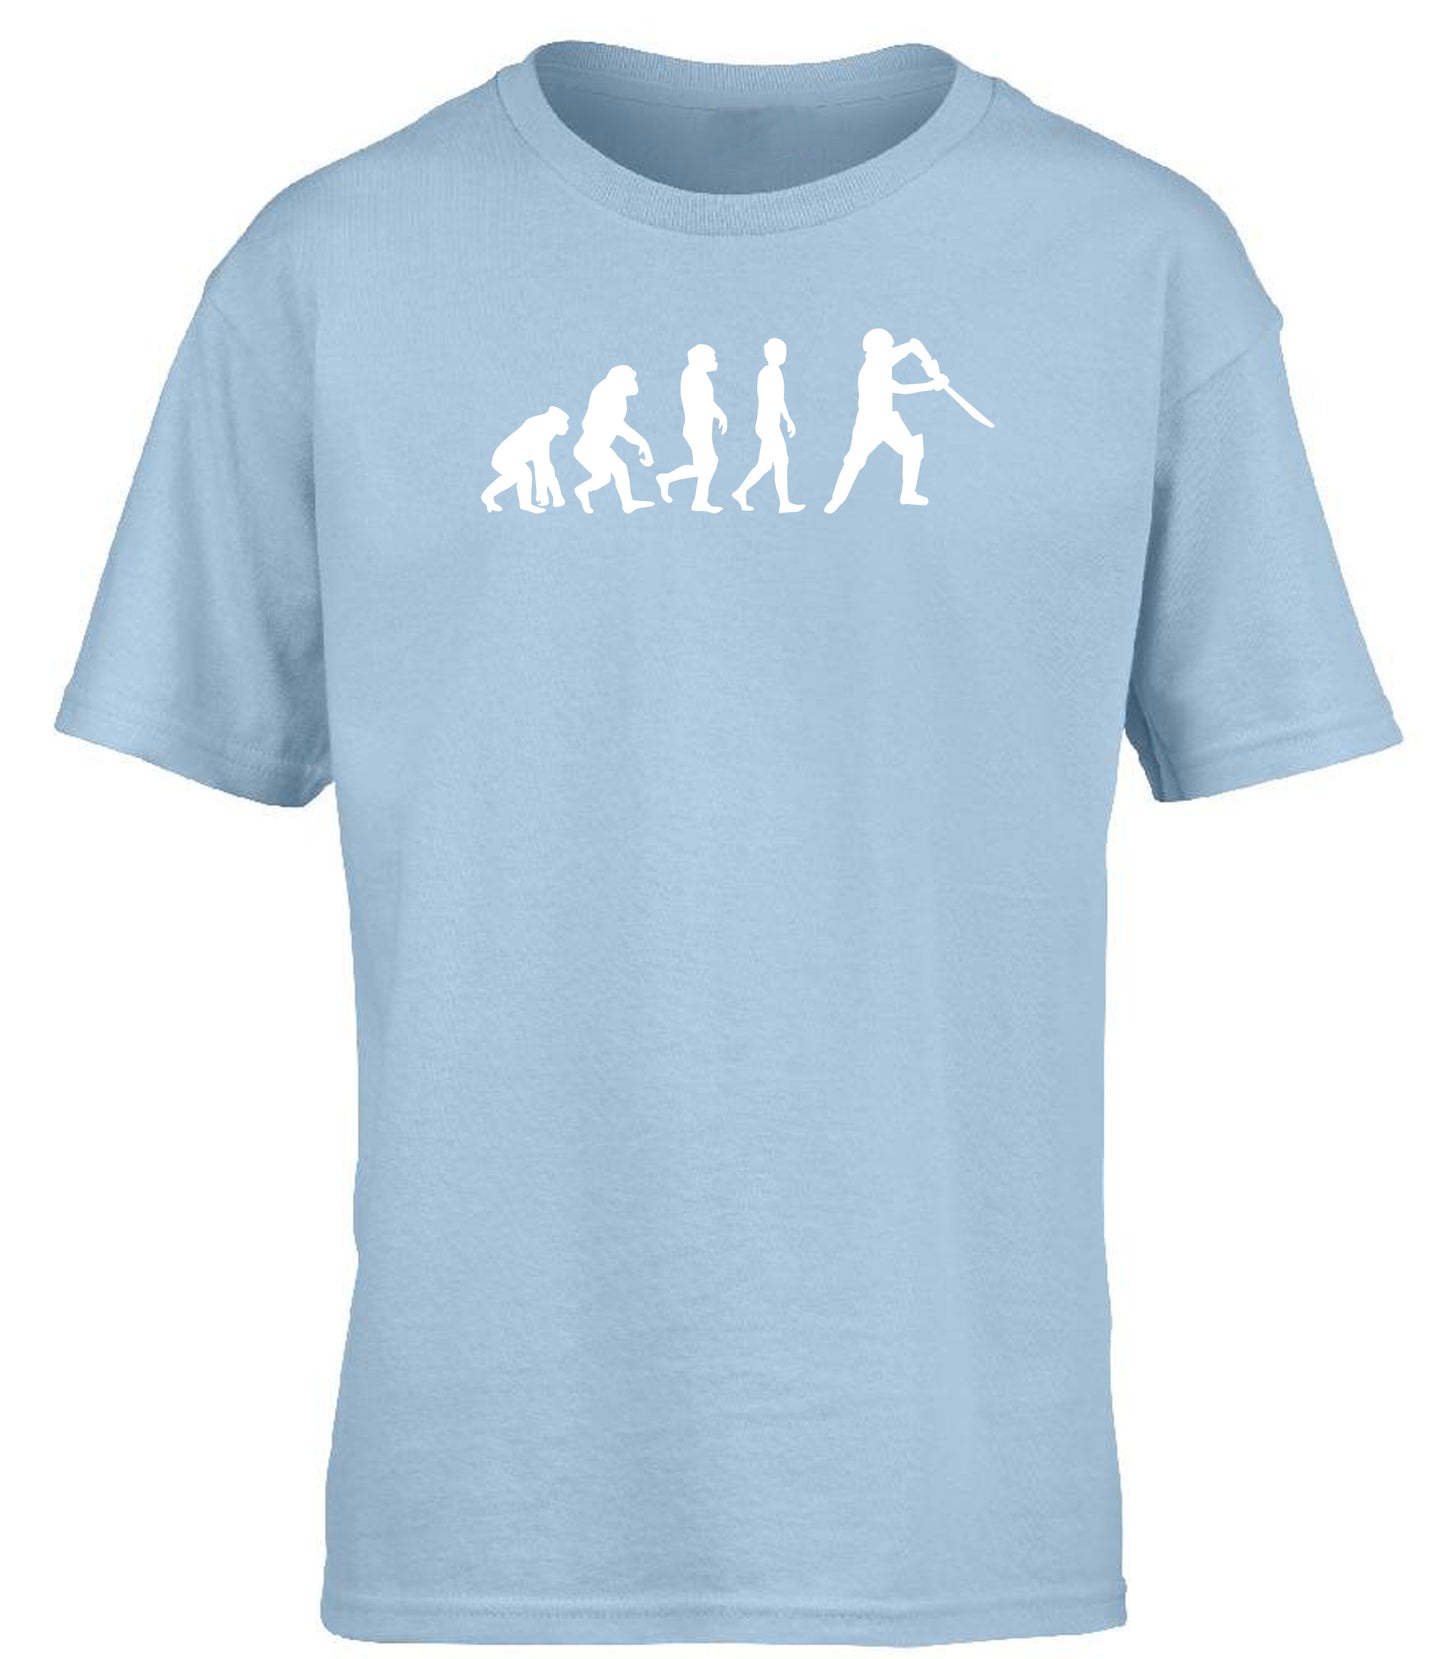 Cricketer Evolution children's T-shirt